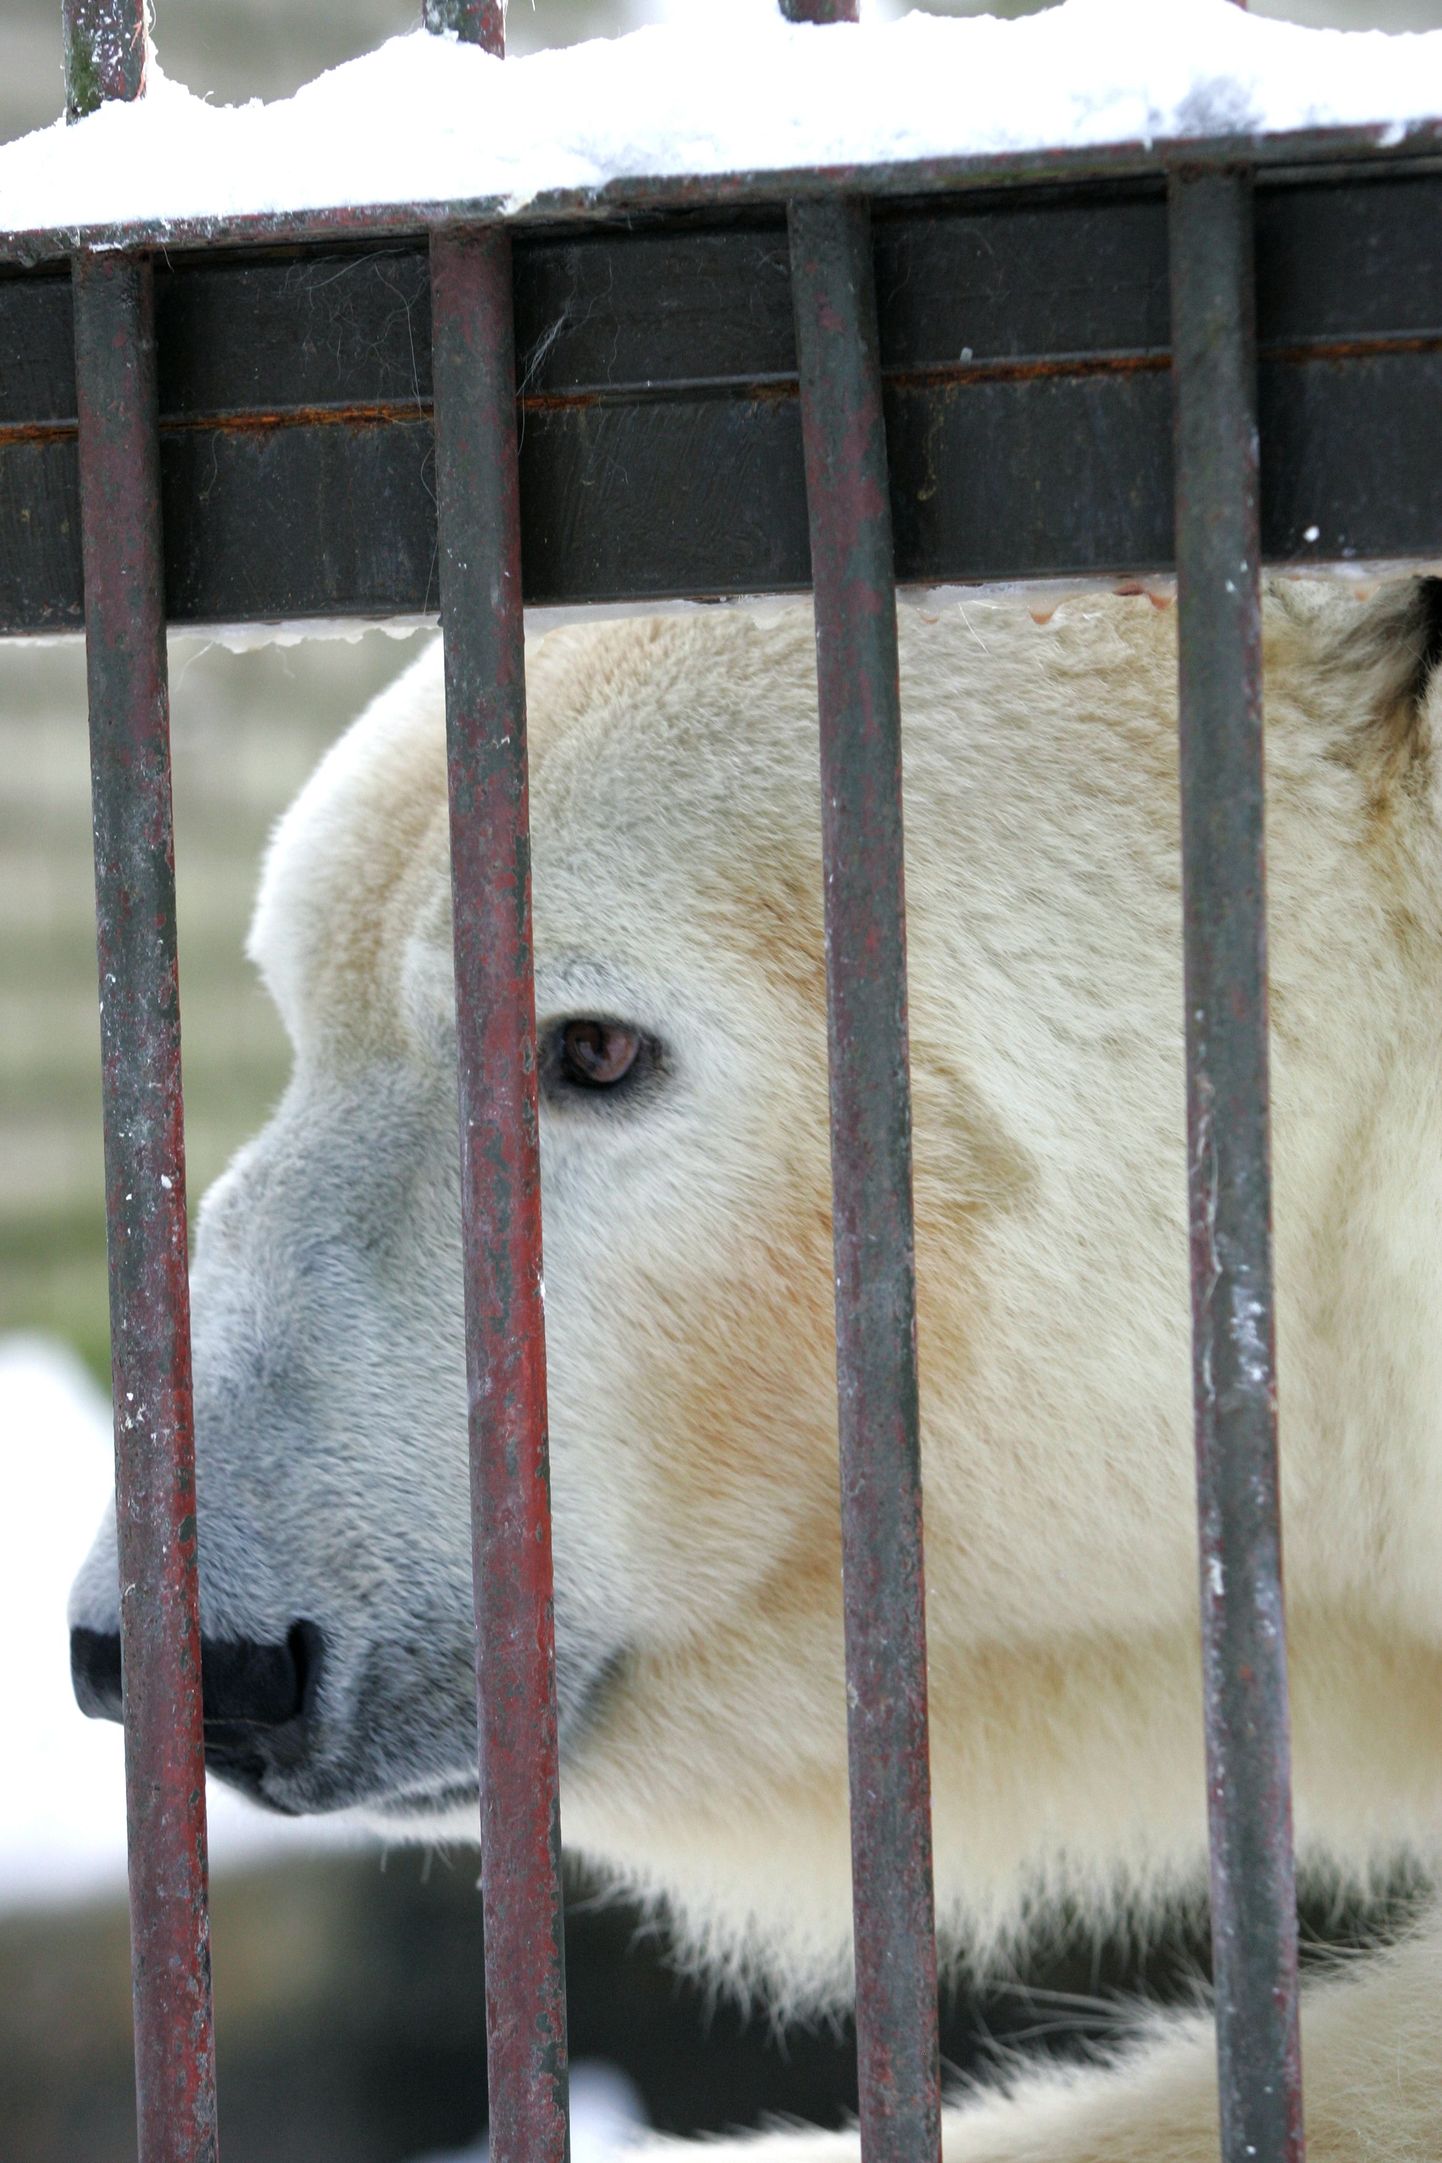 Jääkaru Nord ootab endale ja oma kahele kaasale uut elupaika, kuid see maksab 60 miljonit krooni.